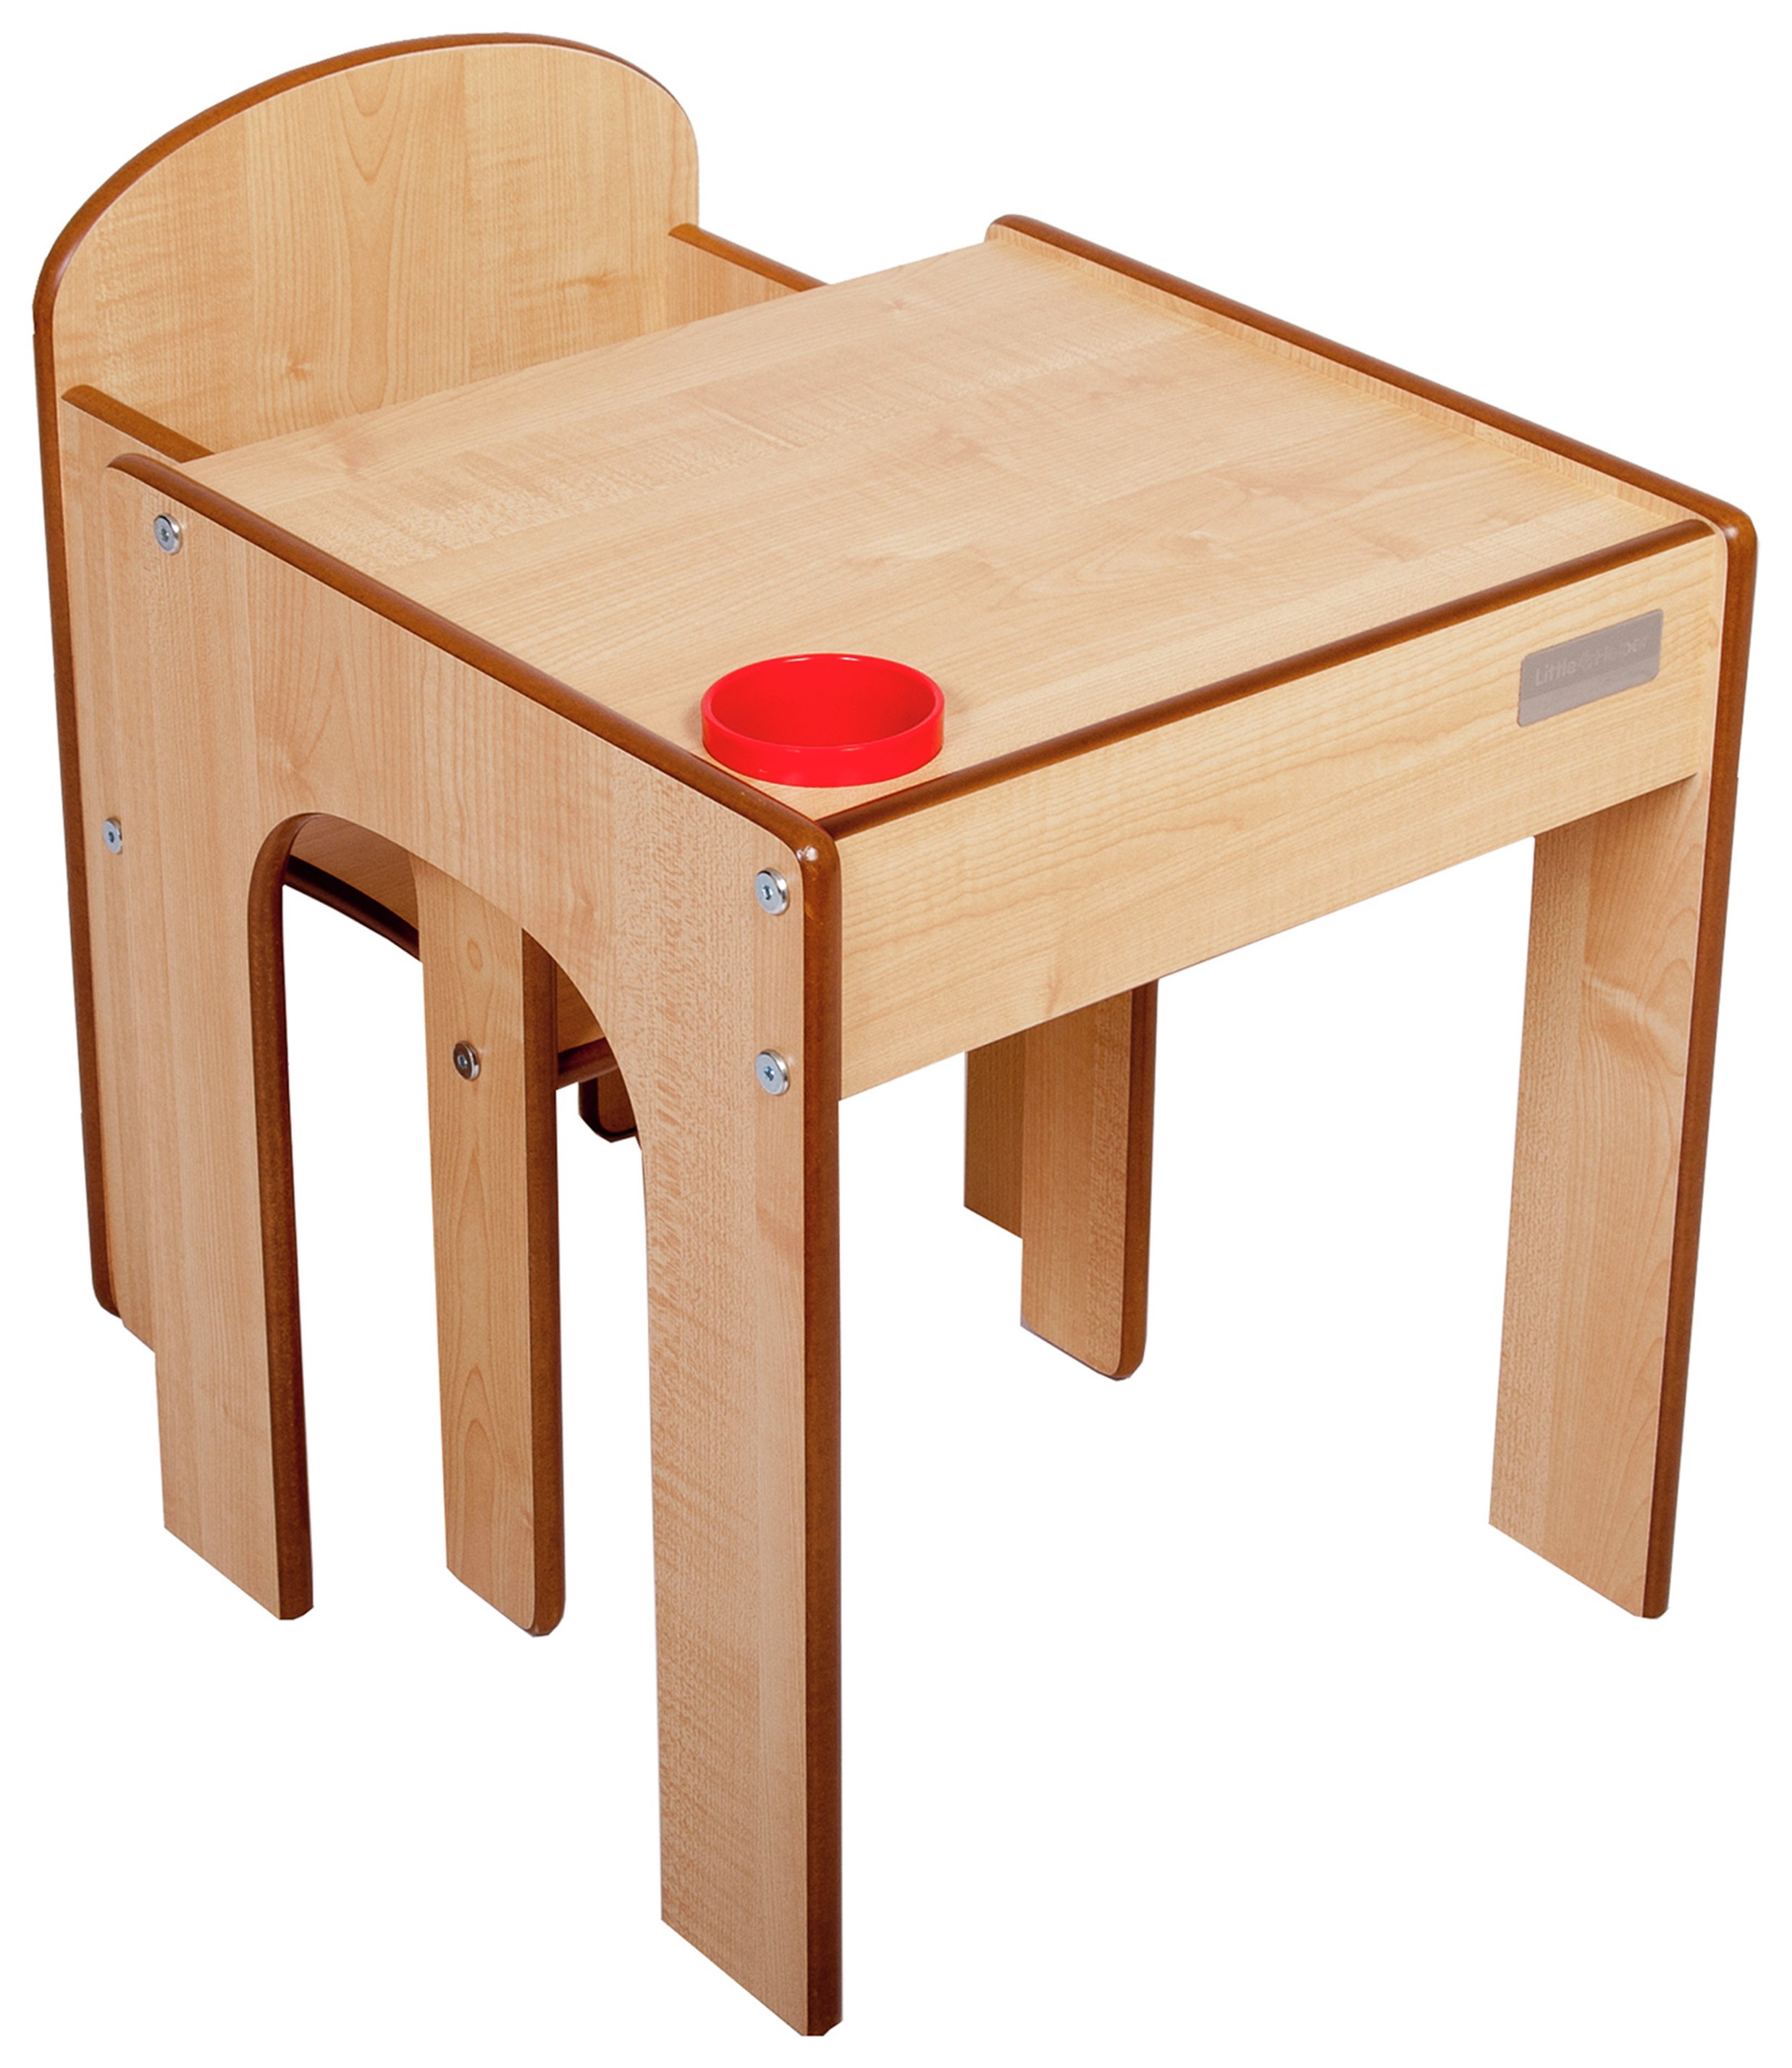 стол детский деревянный своими руками